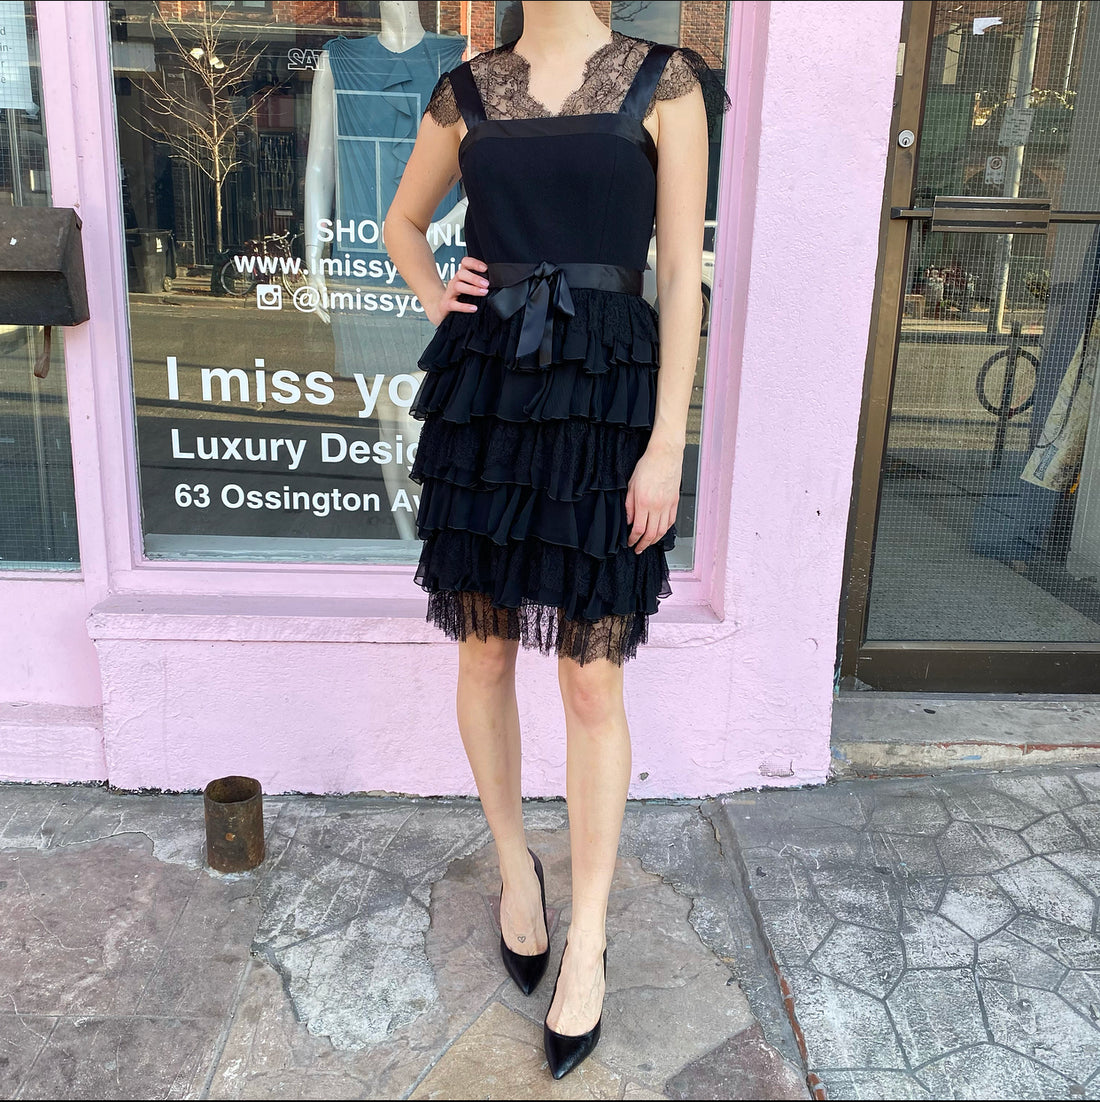 Oscar de la Renta Black Lace Trim Cocktail Dress – 6 / S